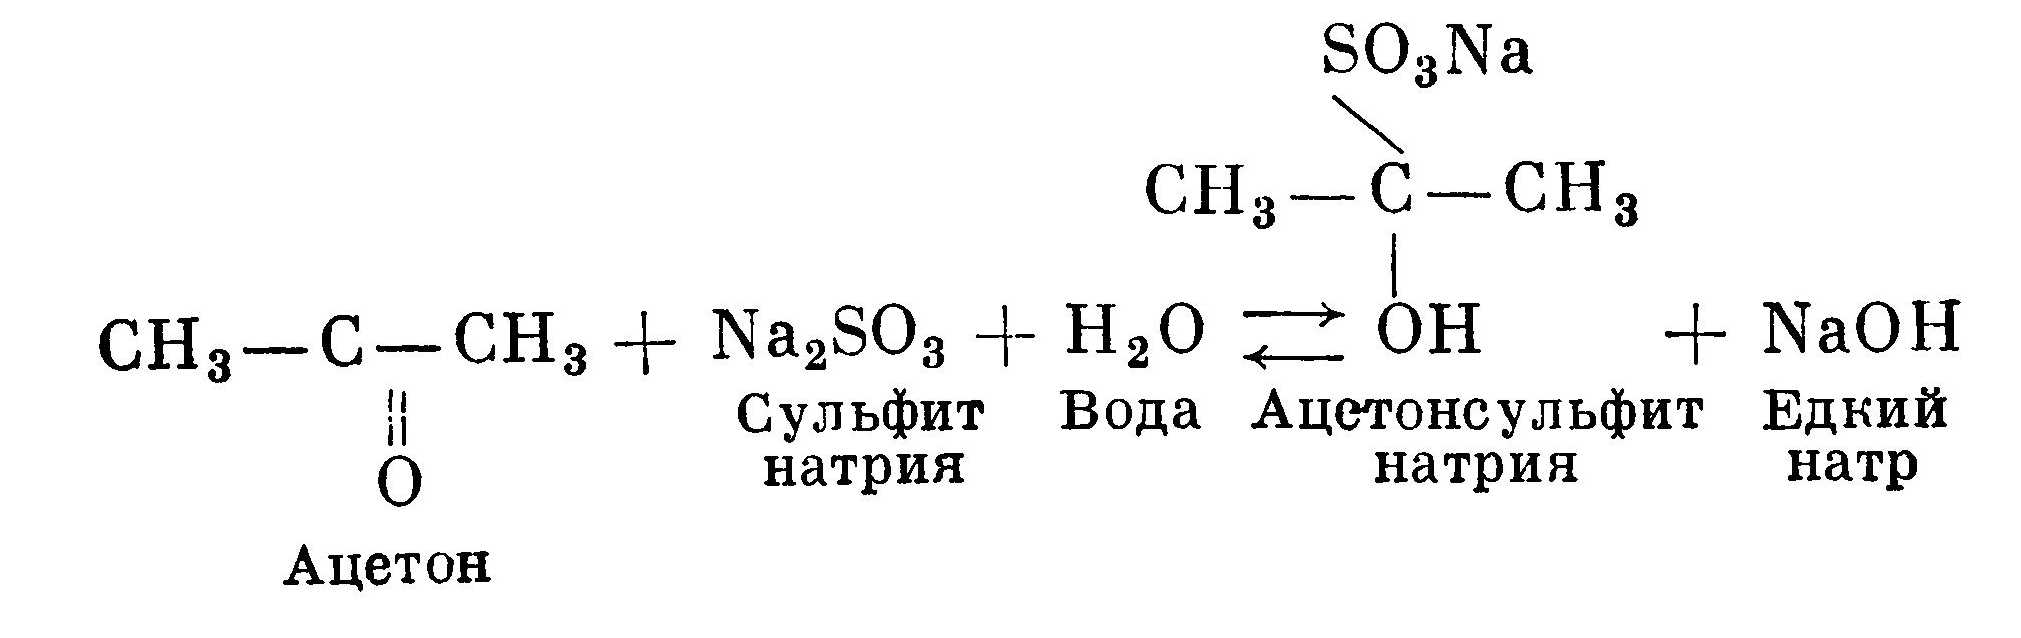 формальдегид или ацетон